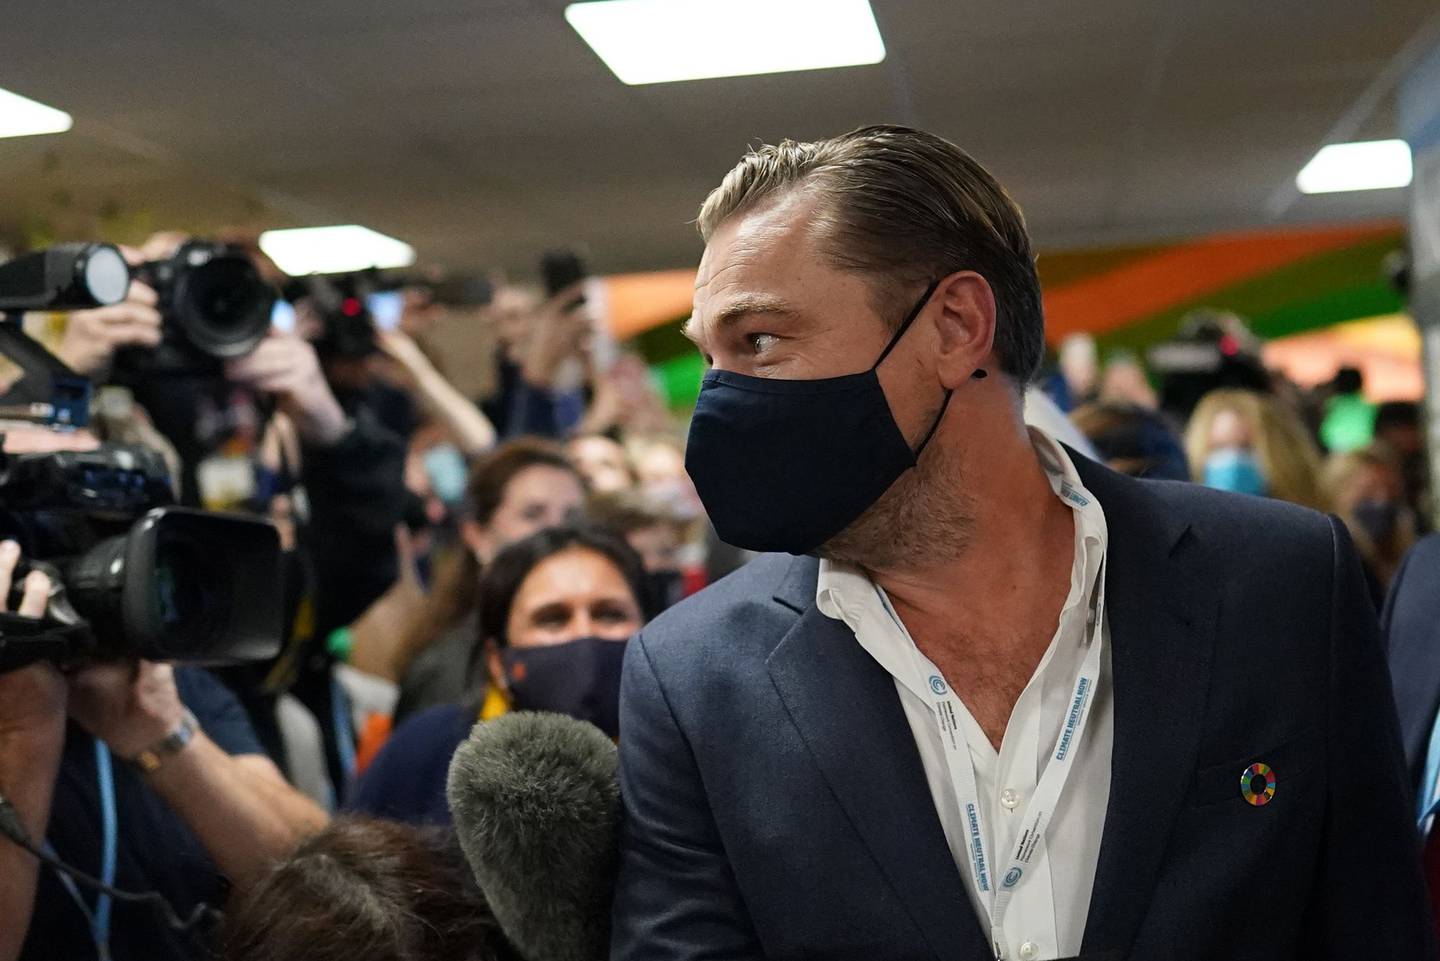 Conferência do clima Leonardo DiCaprio chegou nesta terça na COP-26 em Glasgowdfd